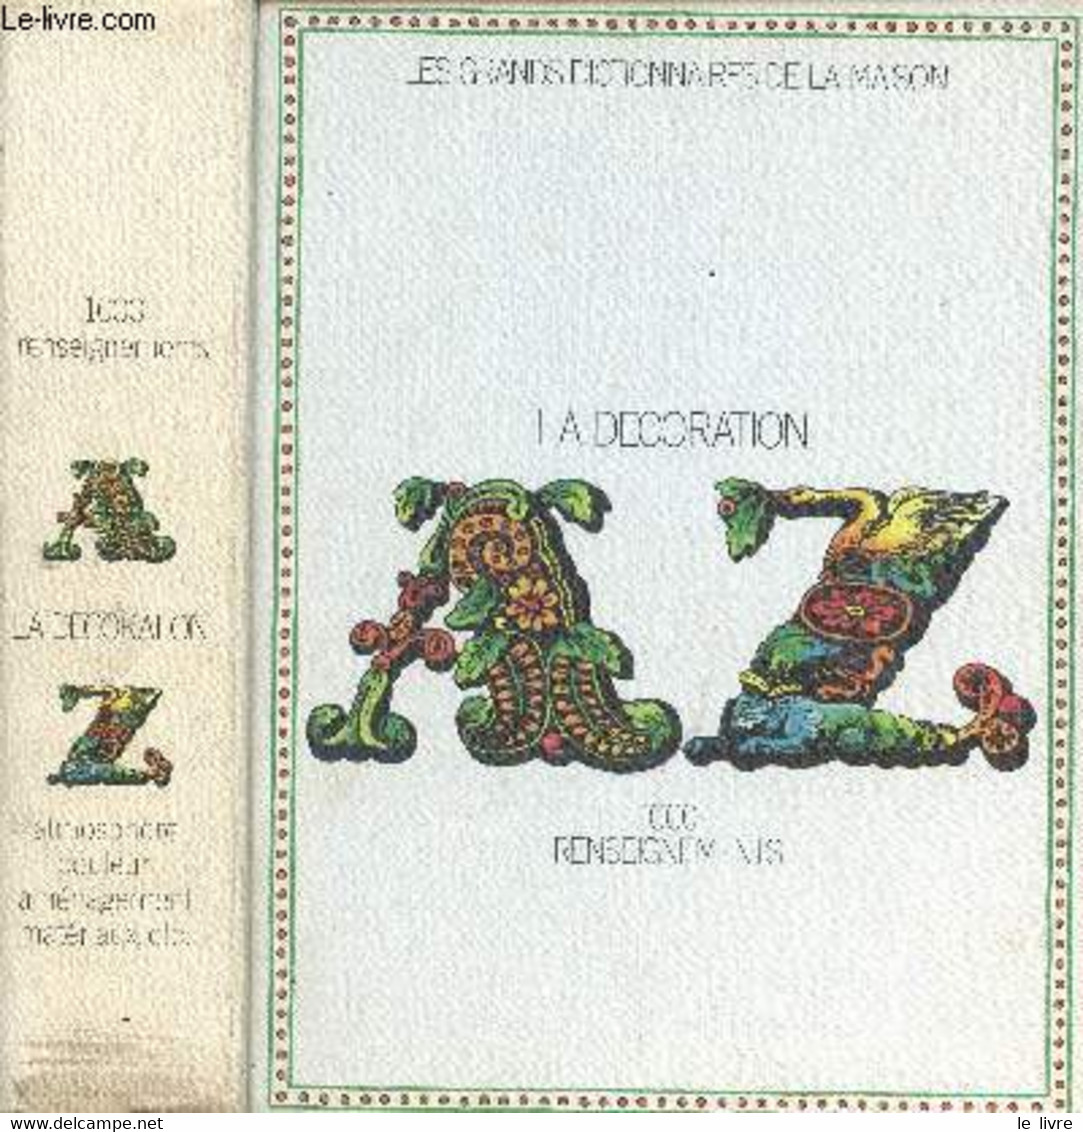 LES GRANDS DICTIONNAIRES DE LA MAISON / LA DECORATION DE A à Z - 1000 RENSEIGNEMENTS. - COLLECTIF - 1973 - Bücher